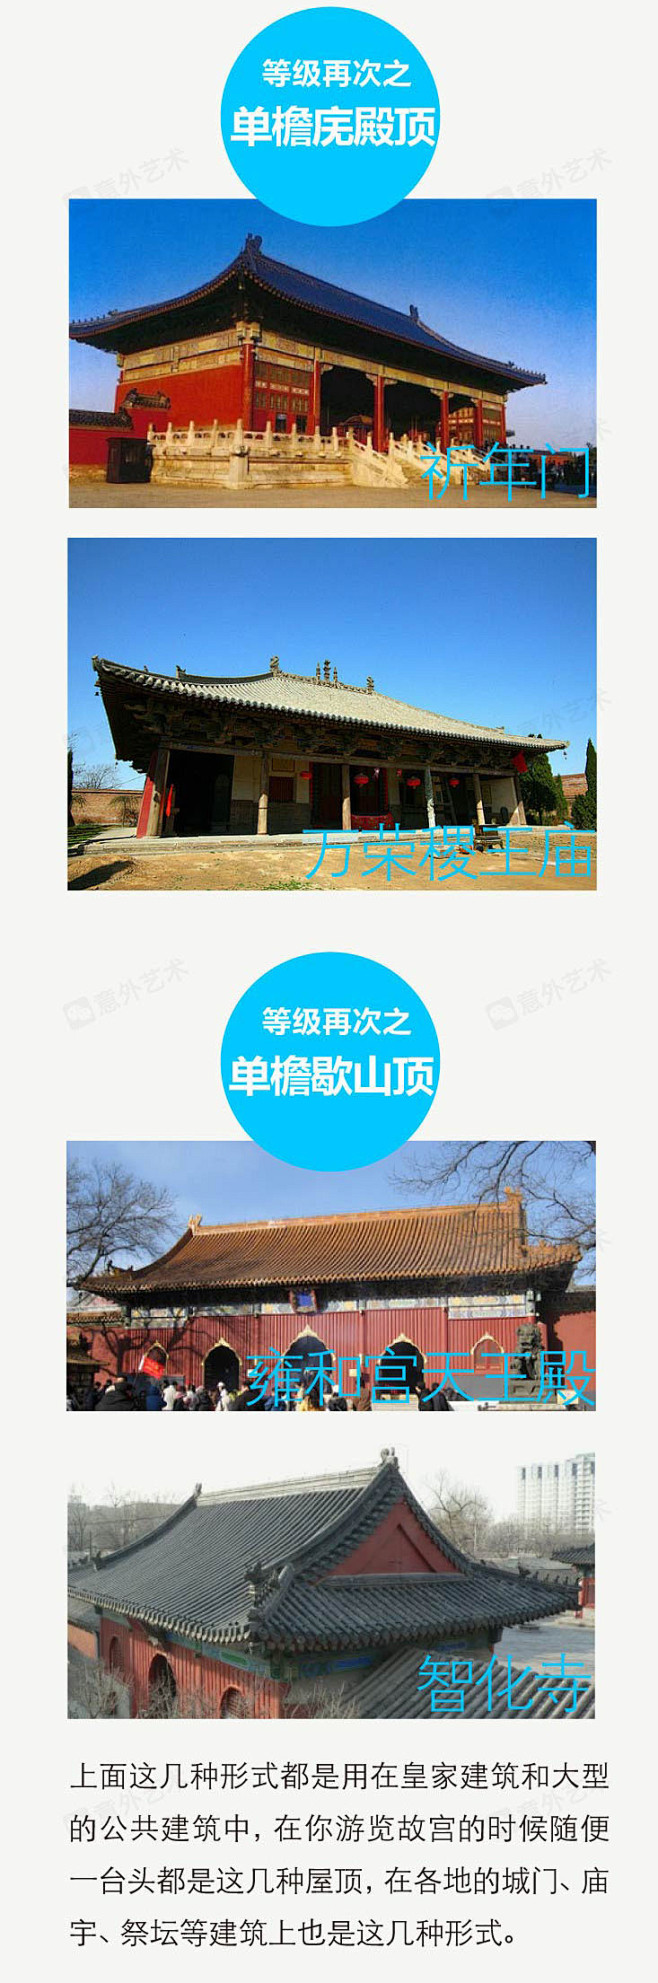 中国古建筑屋顶等级 · 直观解说 - 小...